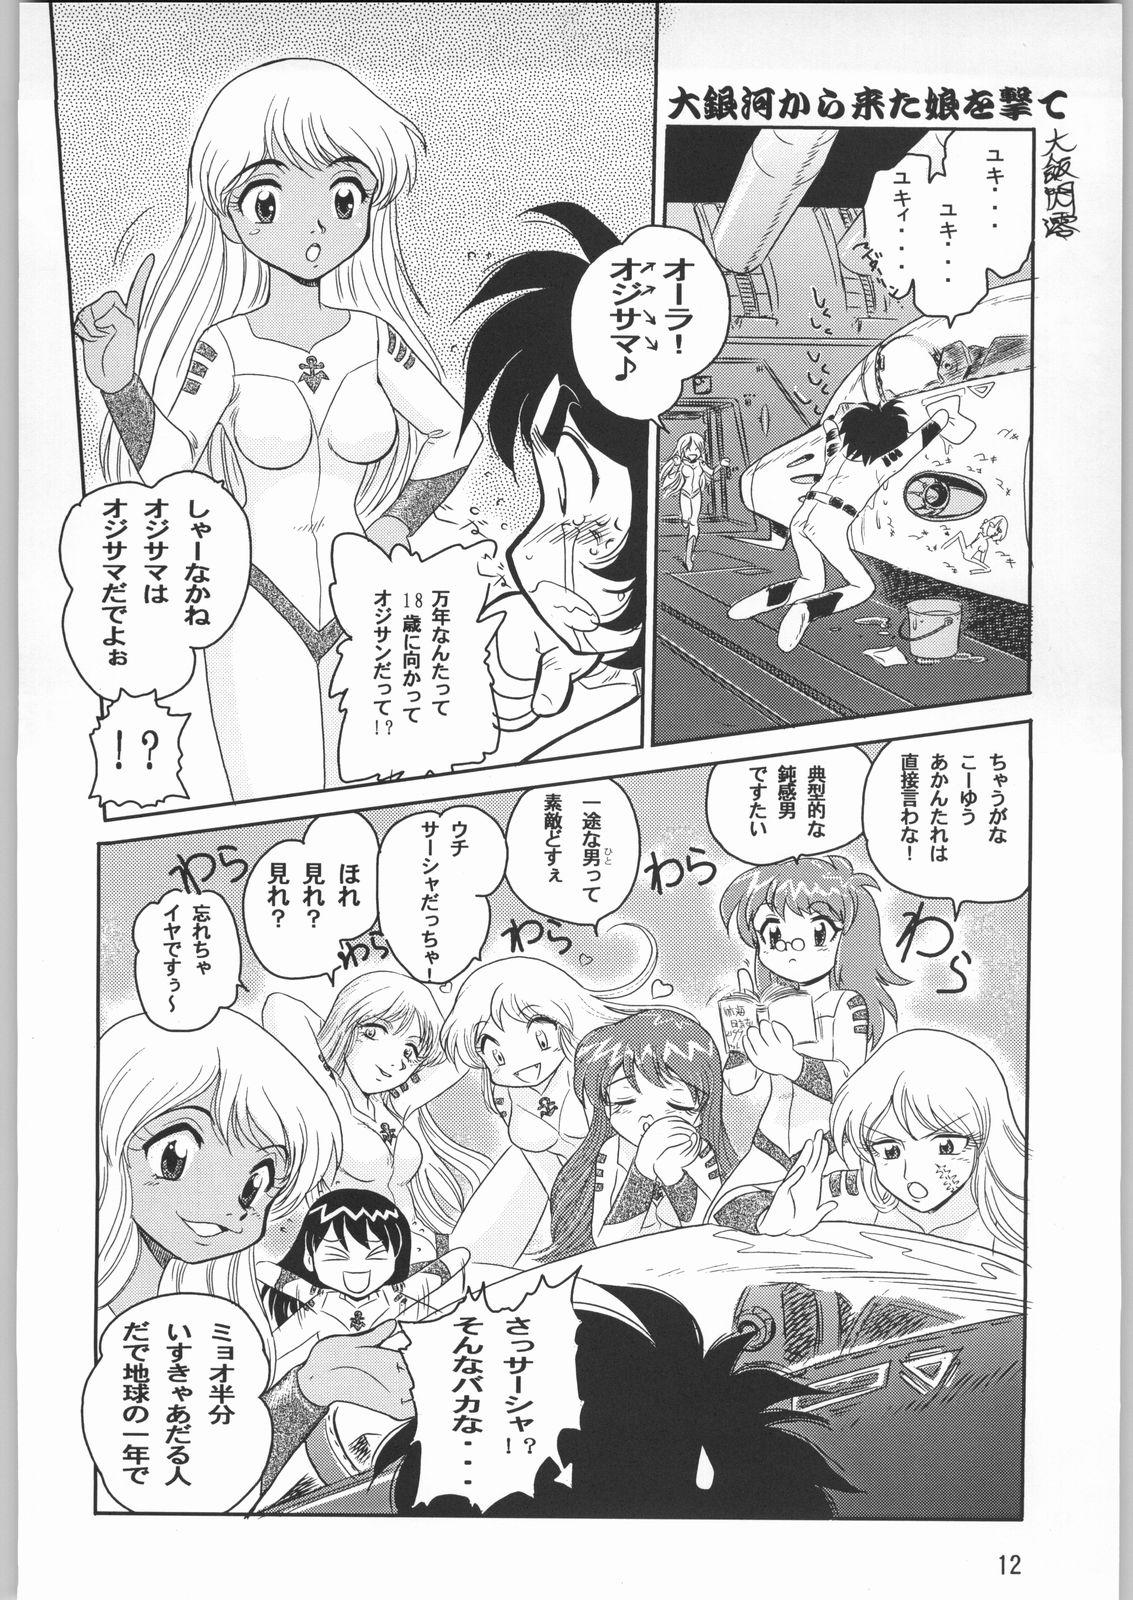 Gets Megaton Punch 1 - Space battleship yamato Chobits Mouth - Page 11